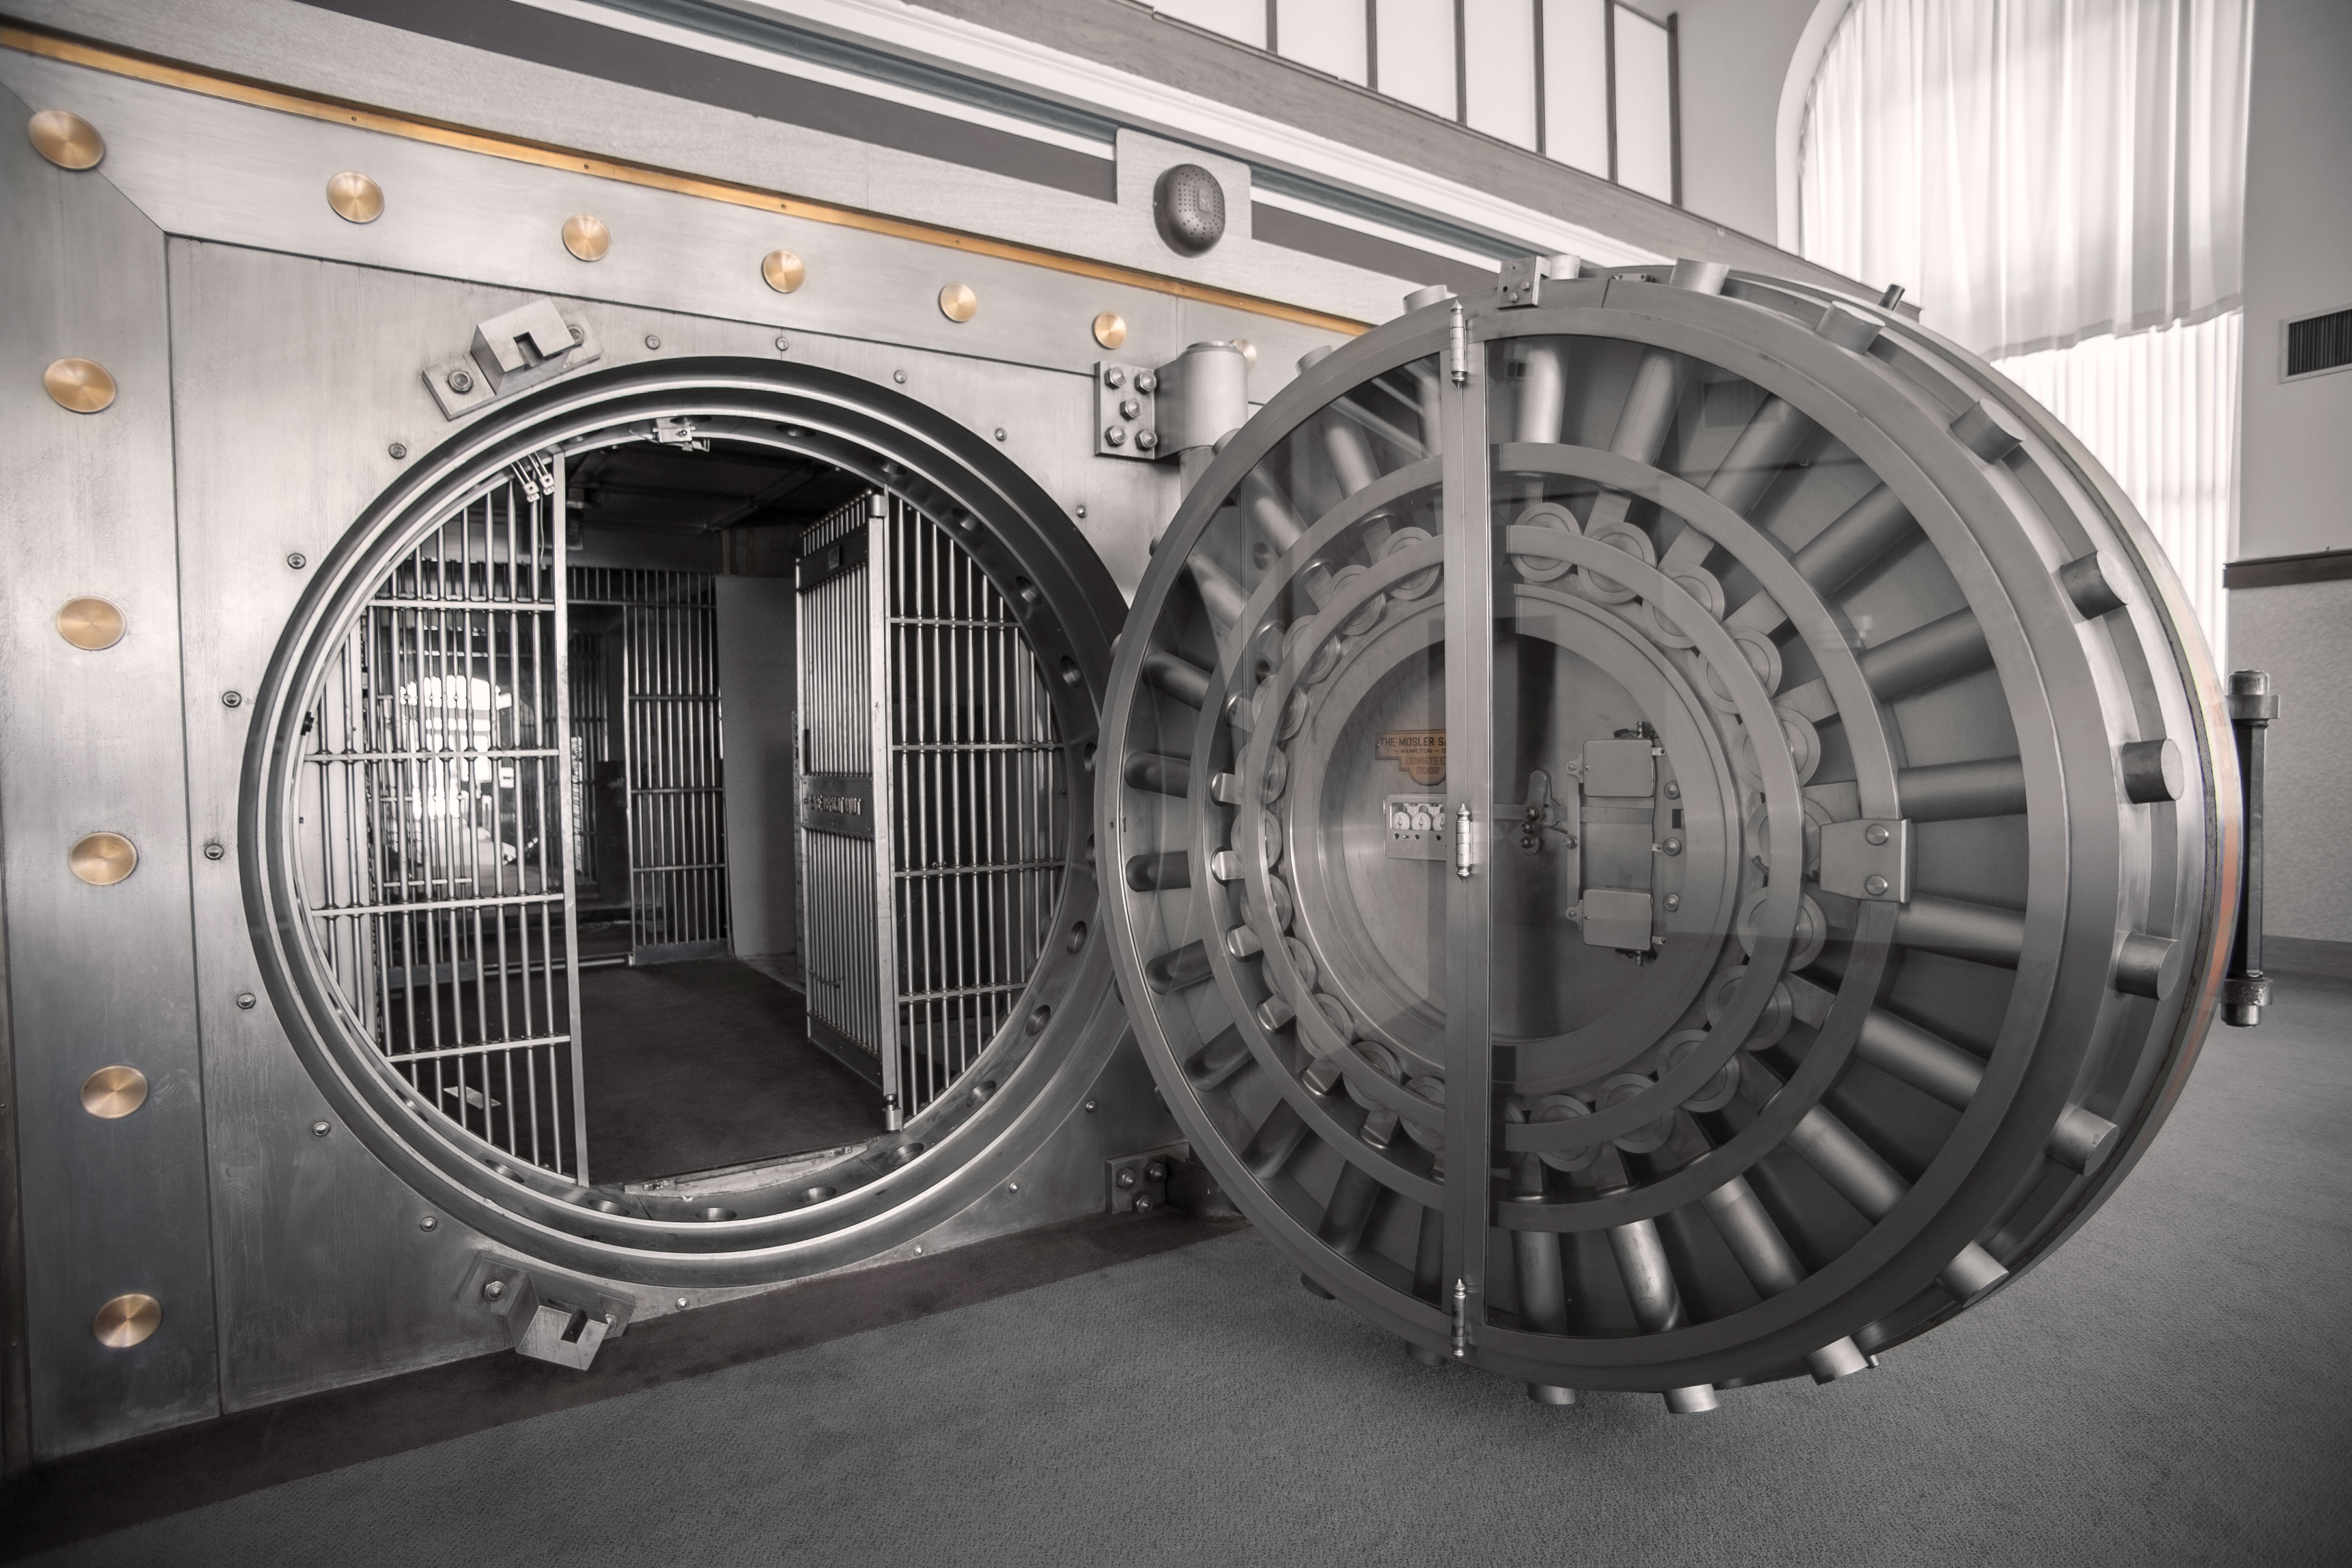 Ball vault. Хранилище the Vault. Дверь банковского хранилища. Банковский сейф. Банковское хранилище с круглой дверь.